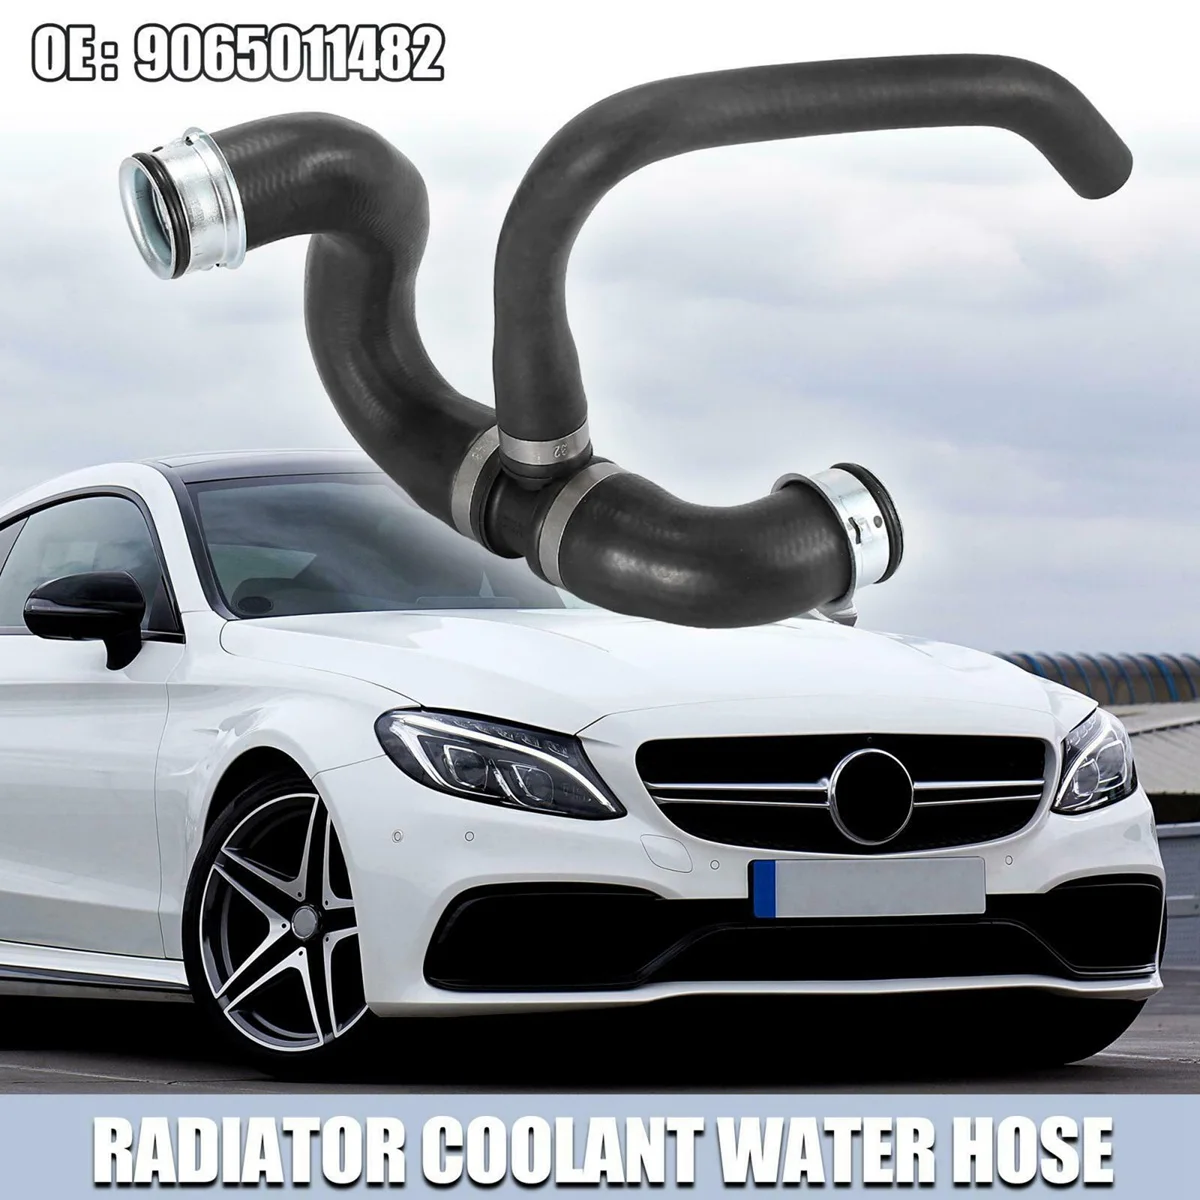 

9065011482 Car Lower Radiator Coolant Hose for Mercedes-Benz Sprinter 3500 2014-2017